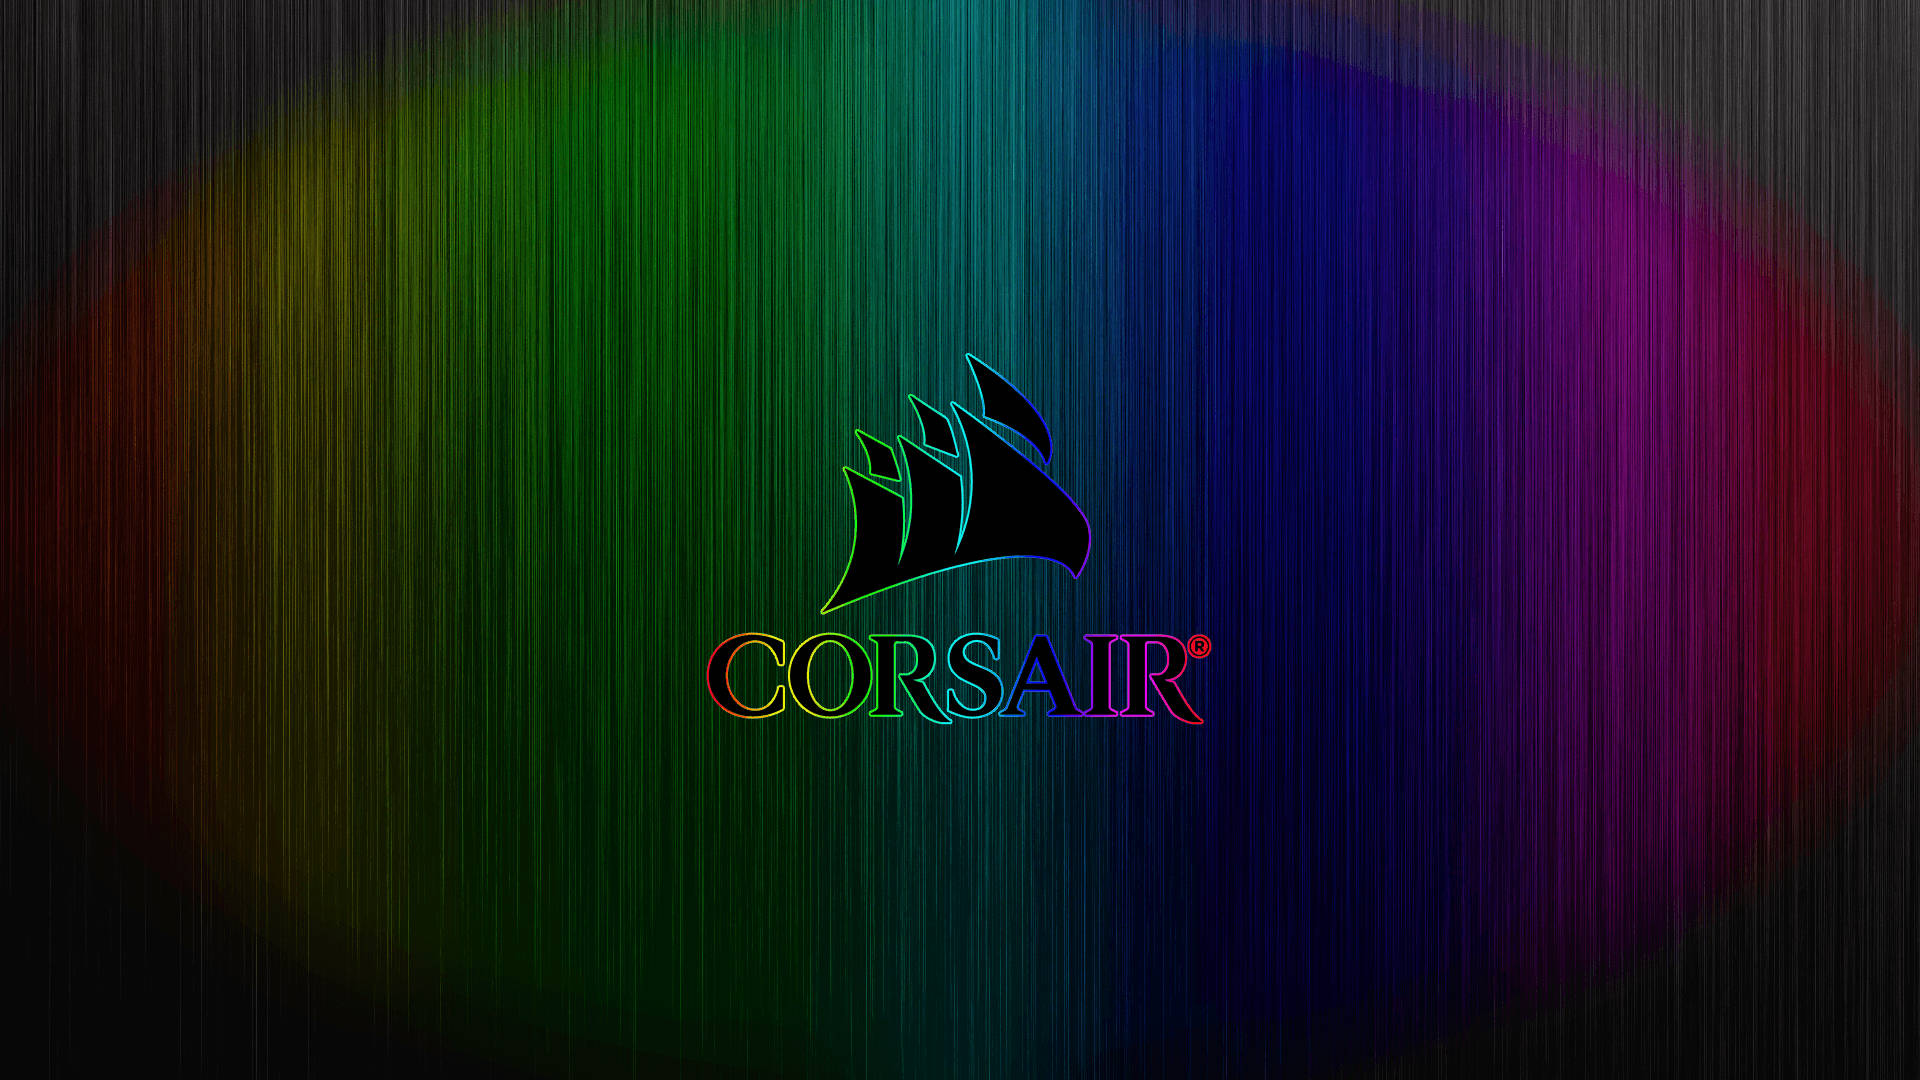 Corsairlogo Rgb 4k: Logotipo De Corsair En Resolución 4k Con Efectos Rgb. Fondo de pantalla